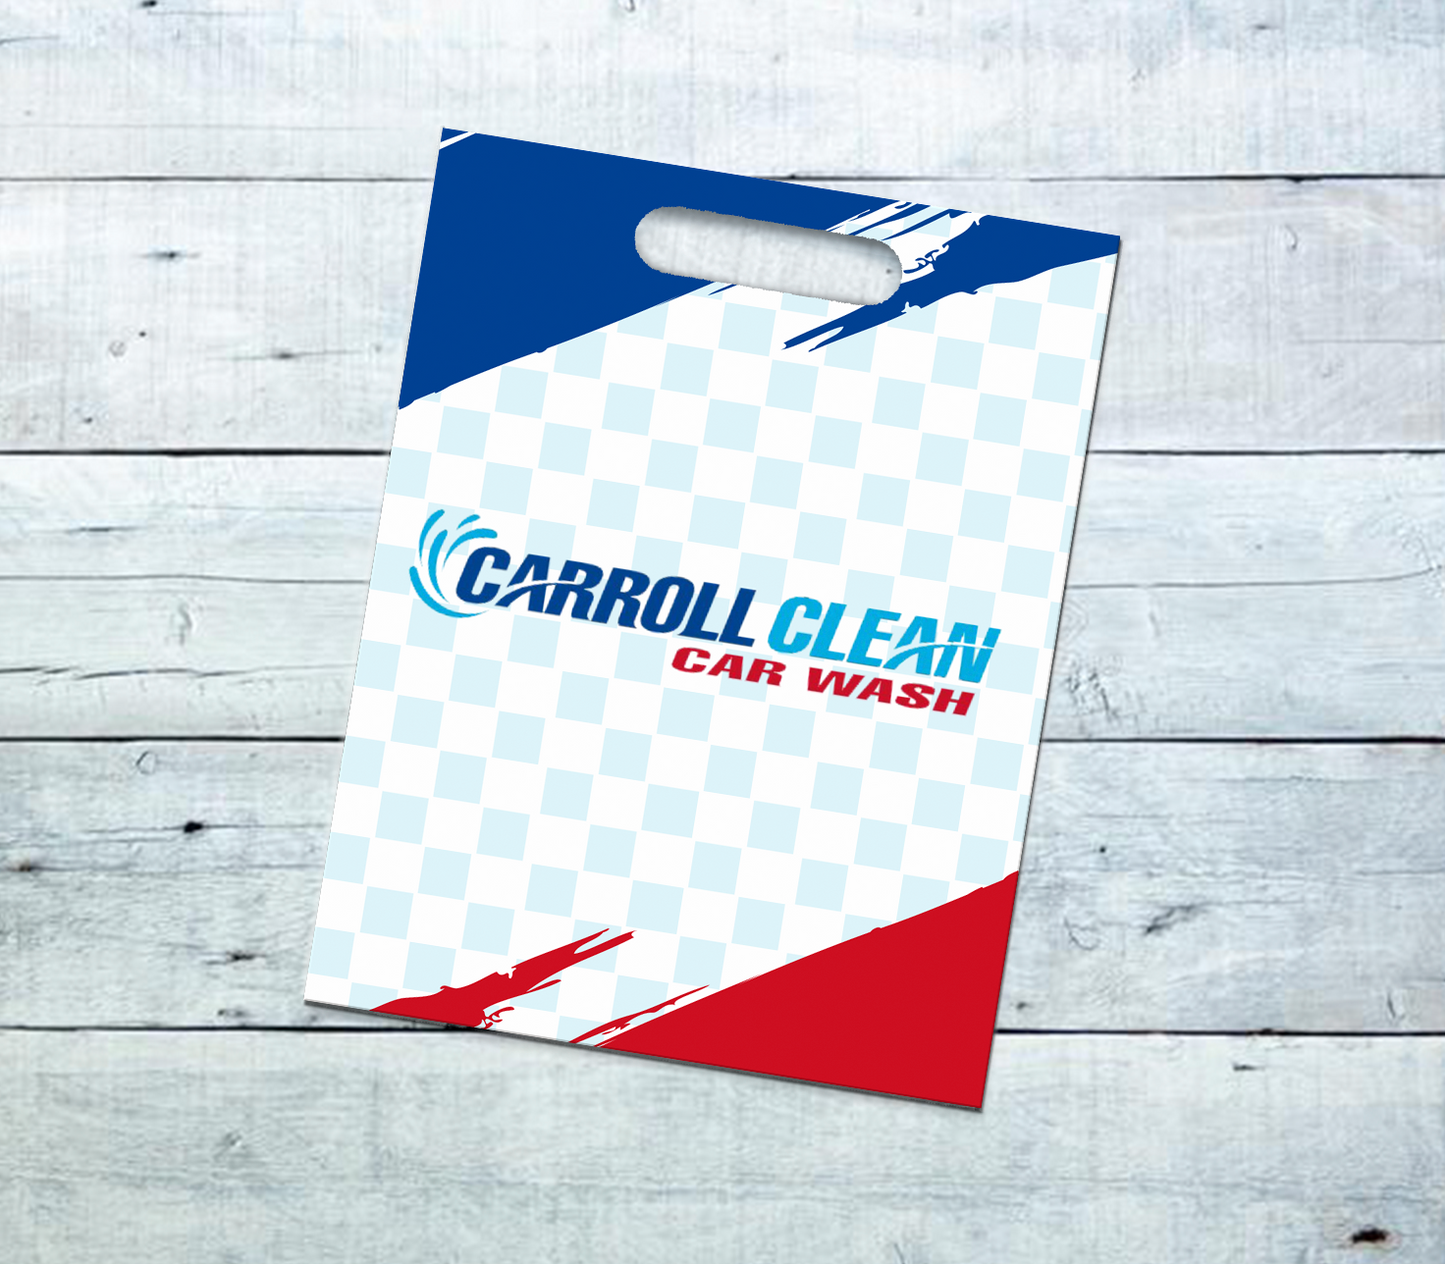 Carrol Clean Car Wash